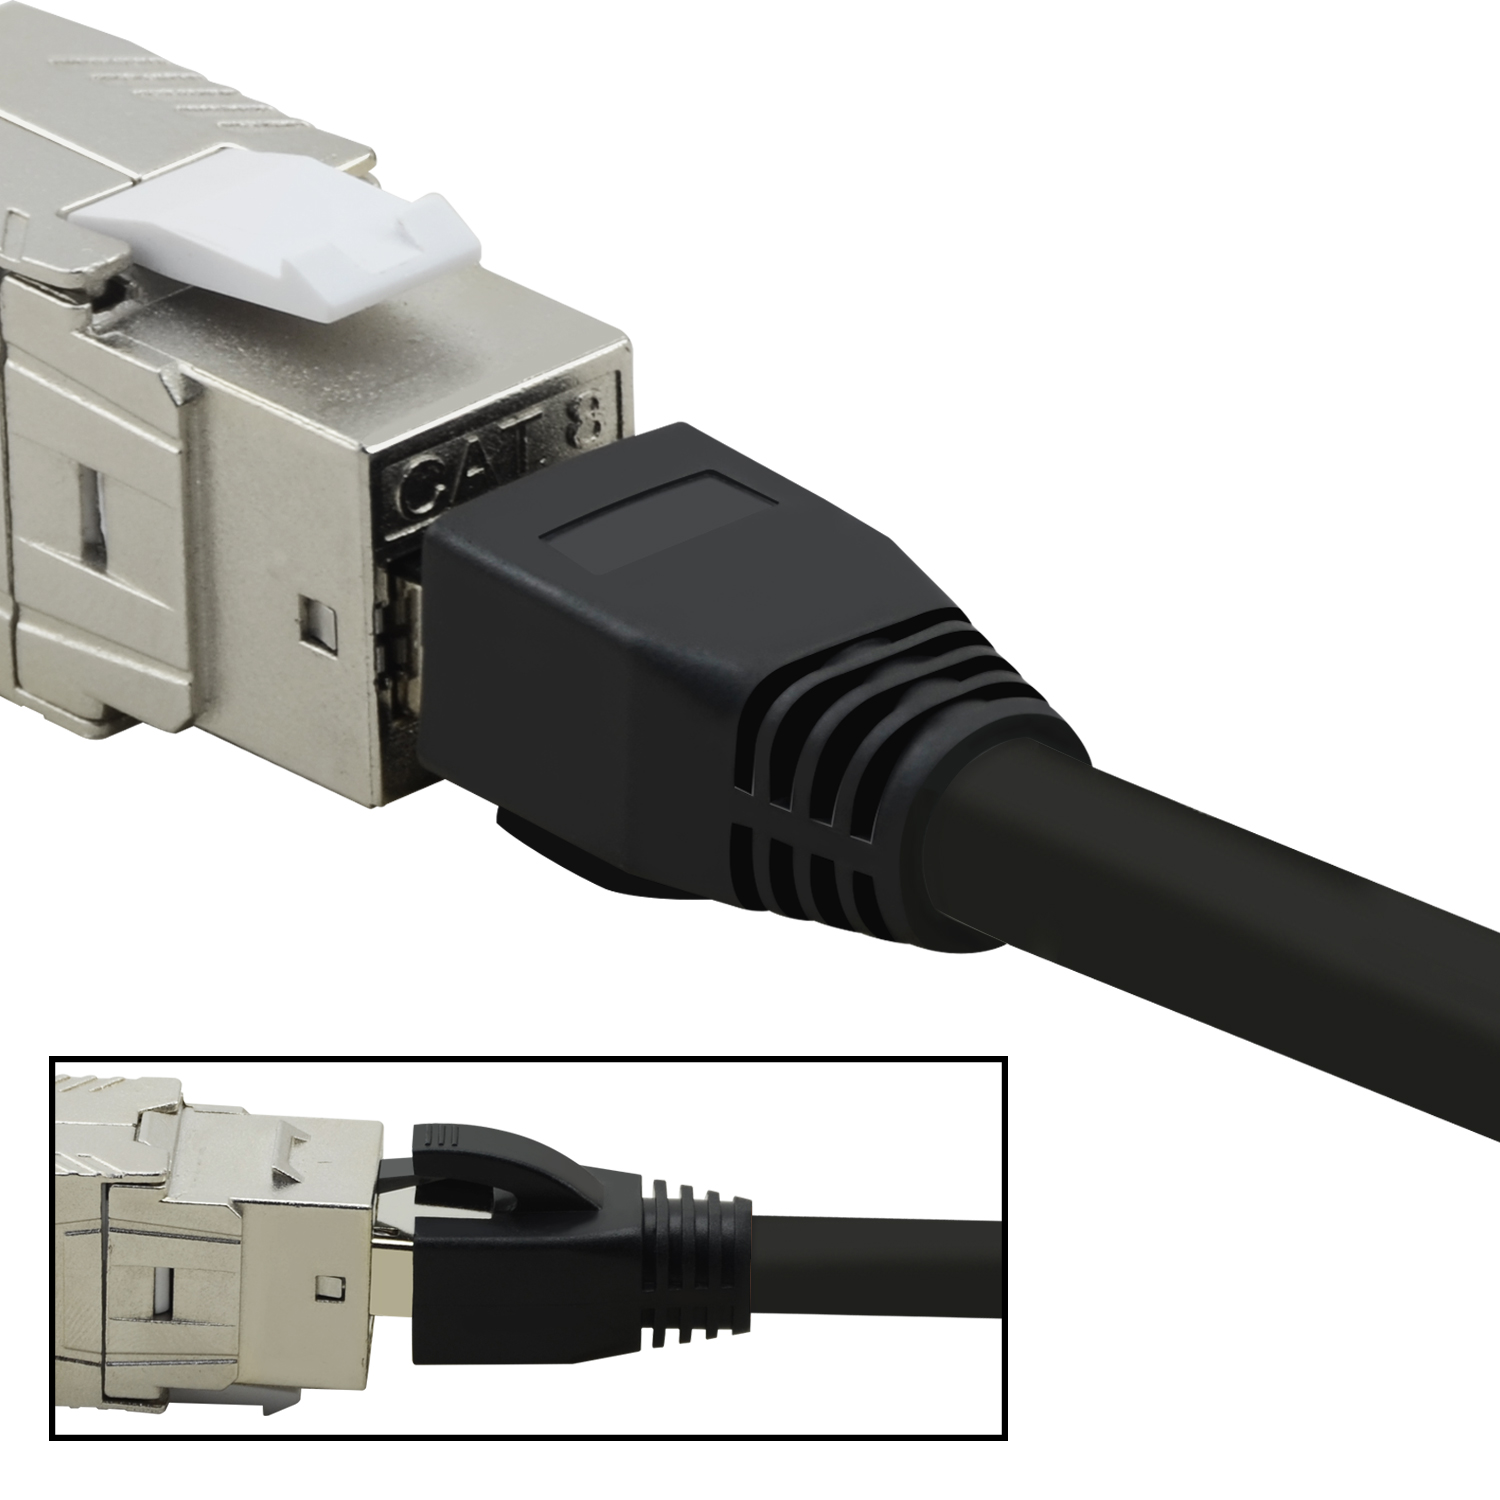 m 3m 3 10er Pack S/FTP TPFNET schwarz, Patchkabel GBit, Netzwerkkabel, / 40 Netzwerkkabel